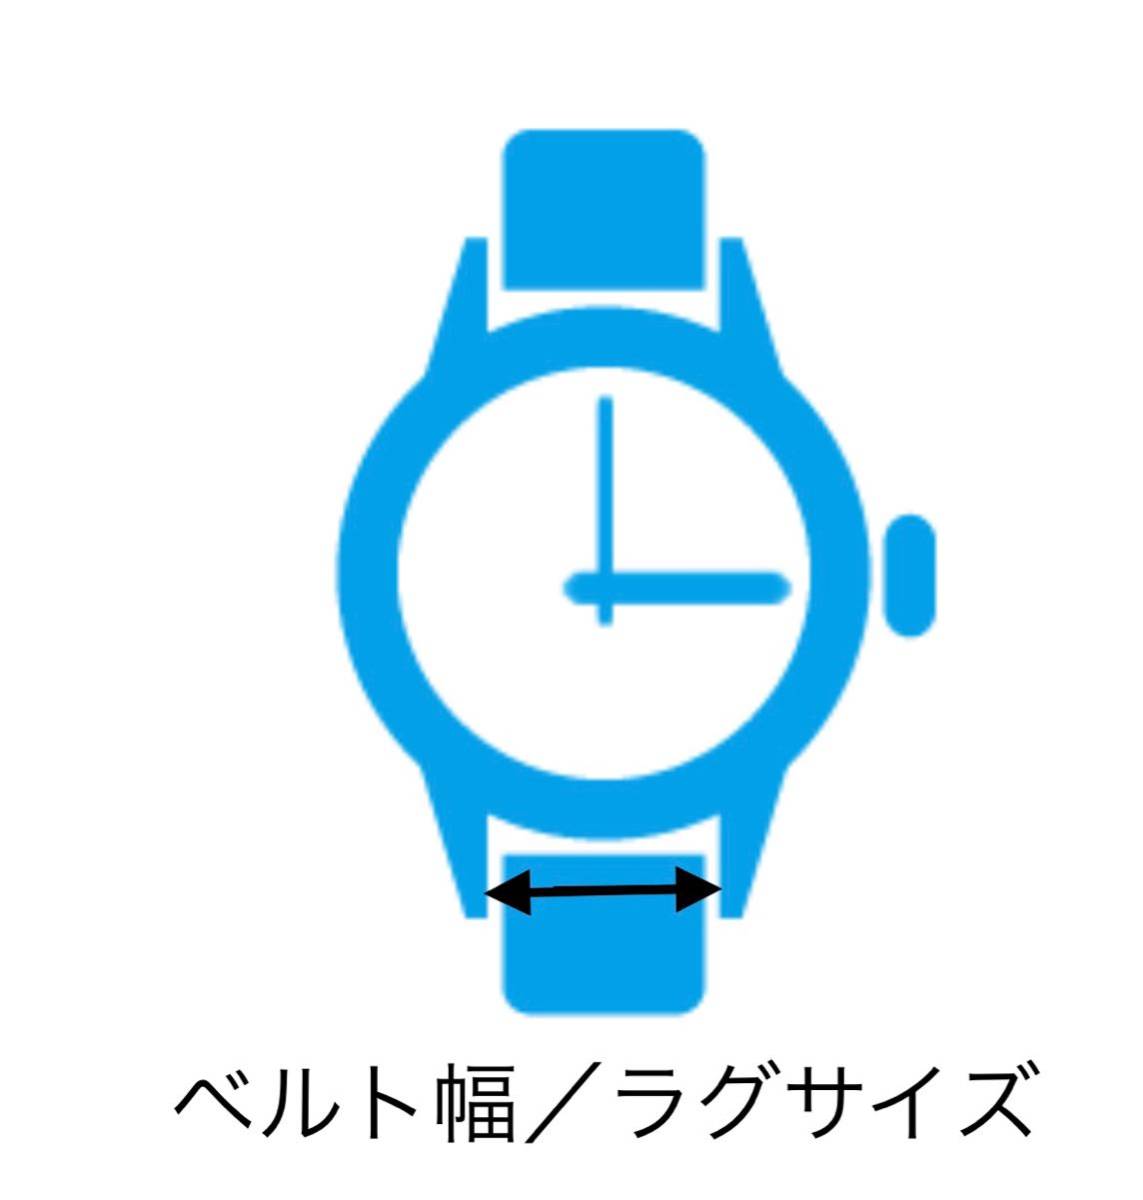  наручные часы spring палка spring палка 2 шт 13mm для 60 иен стоимость доставки 63 иен быстрое решение немедленная отправка изображение 3 листов y